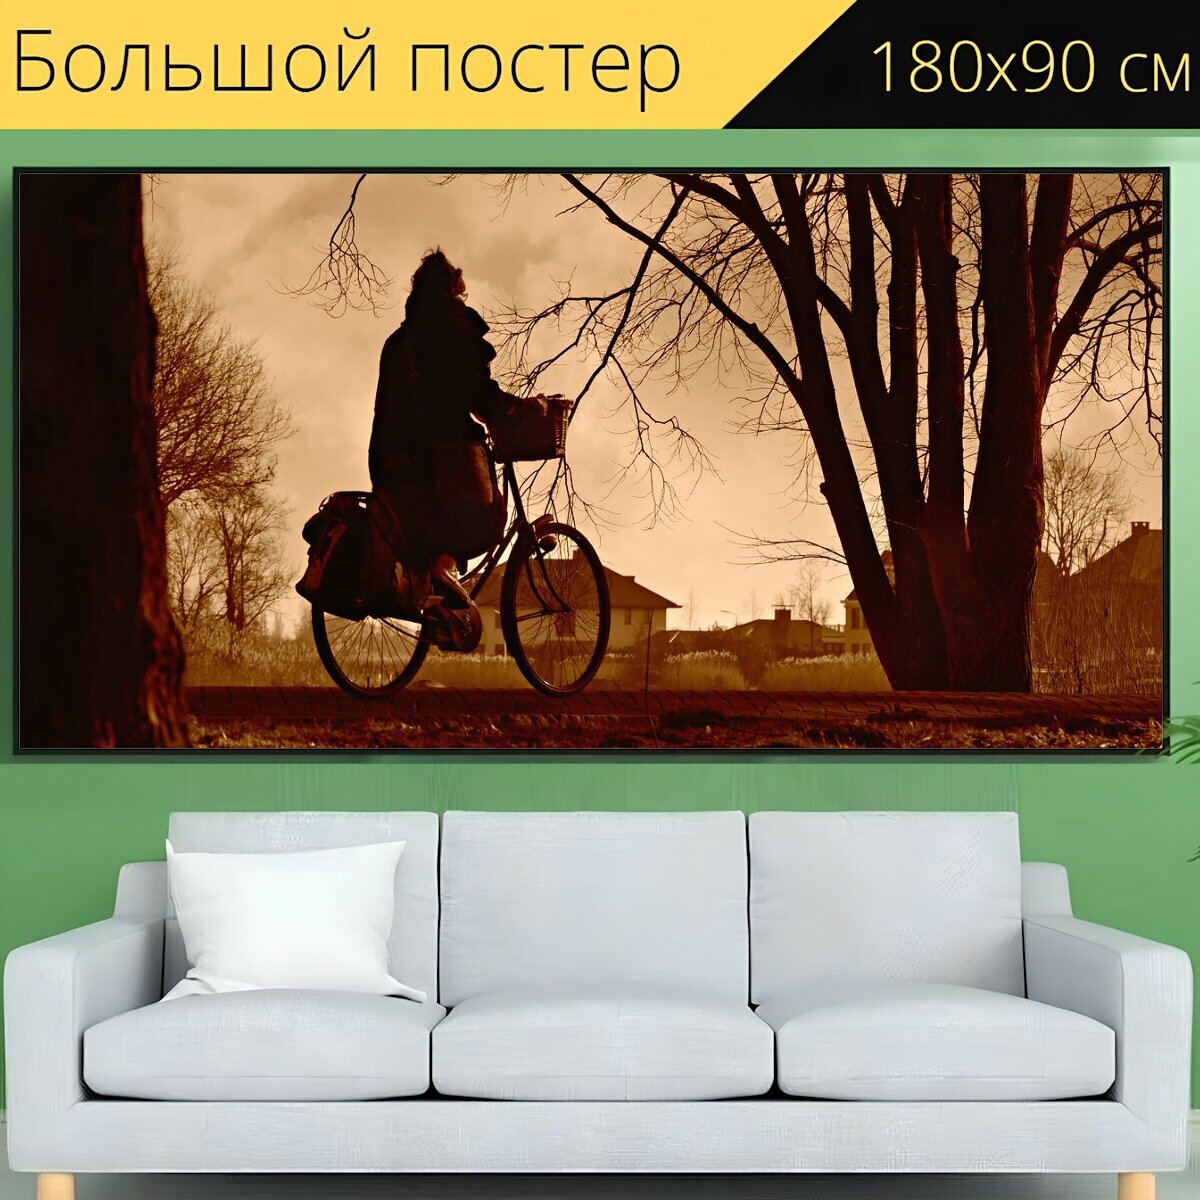 Большой постер "Велосипедист, кататься на велосипеде, велосипед" 180 x 90 см. для интерьера